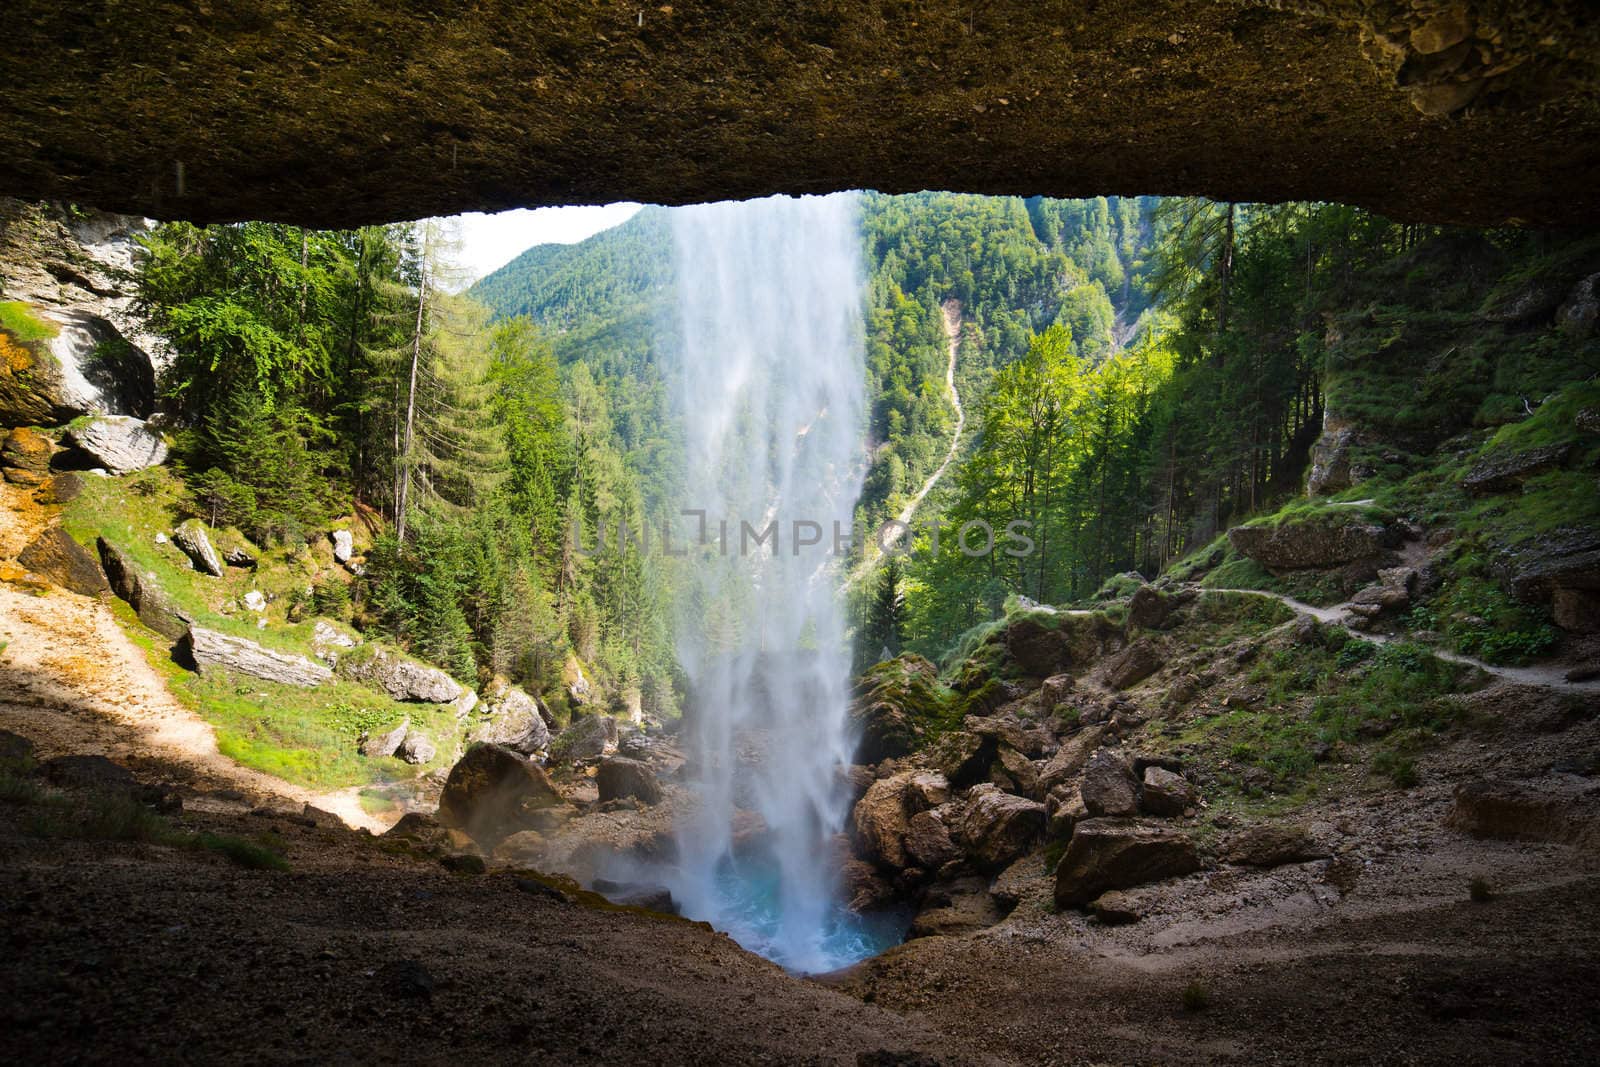 Pericnik waterfall in Julian Alps in Slovenia by furzyk73